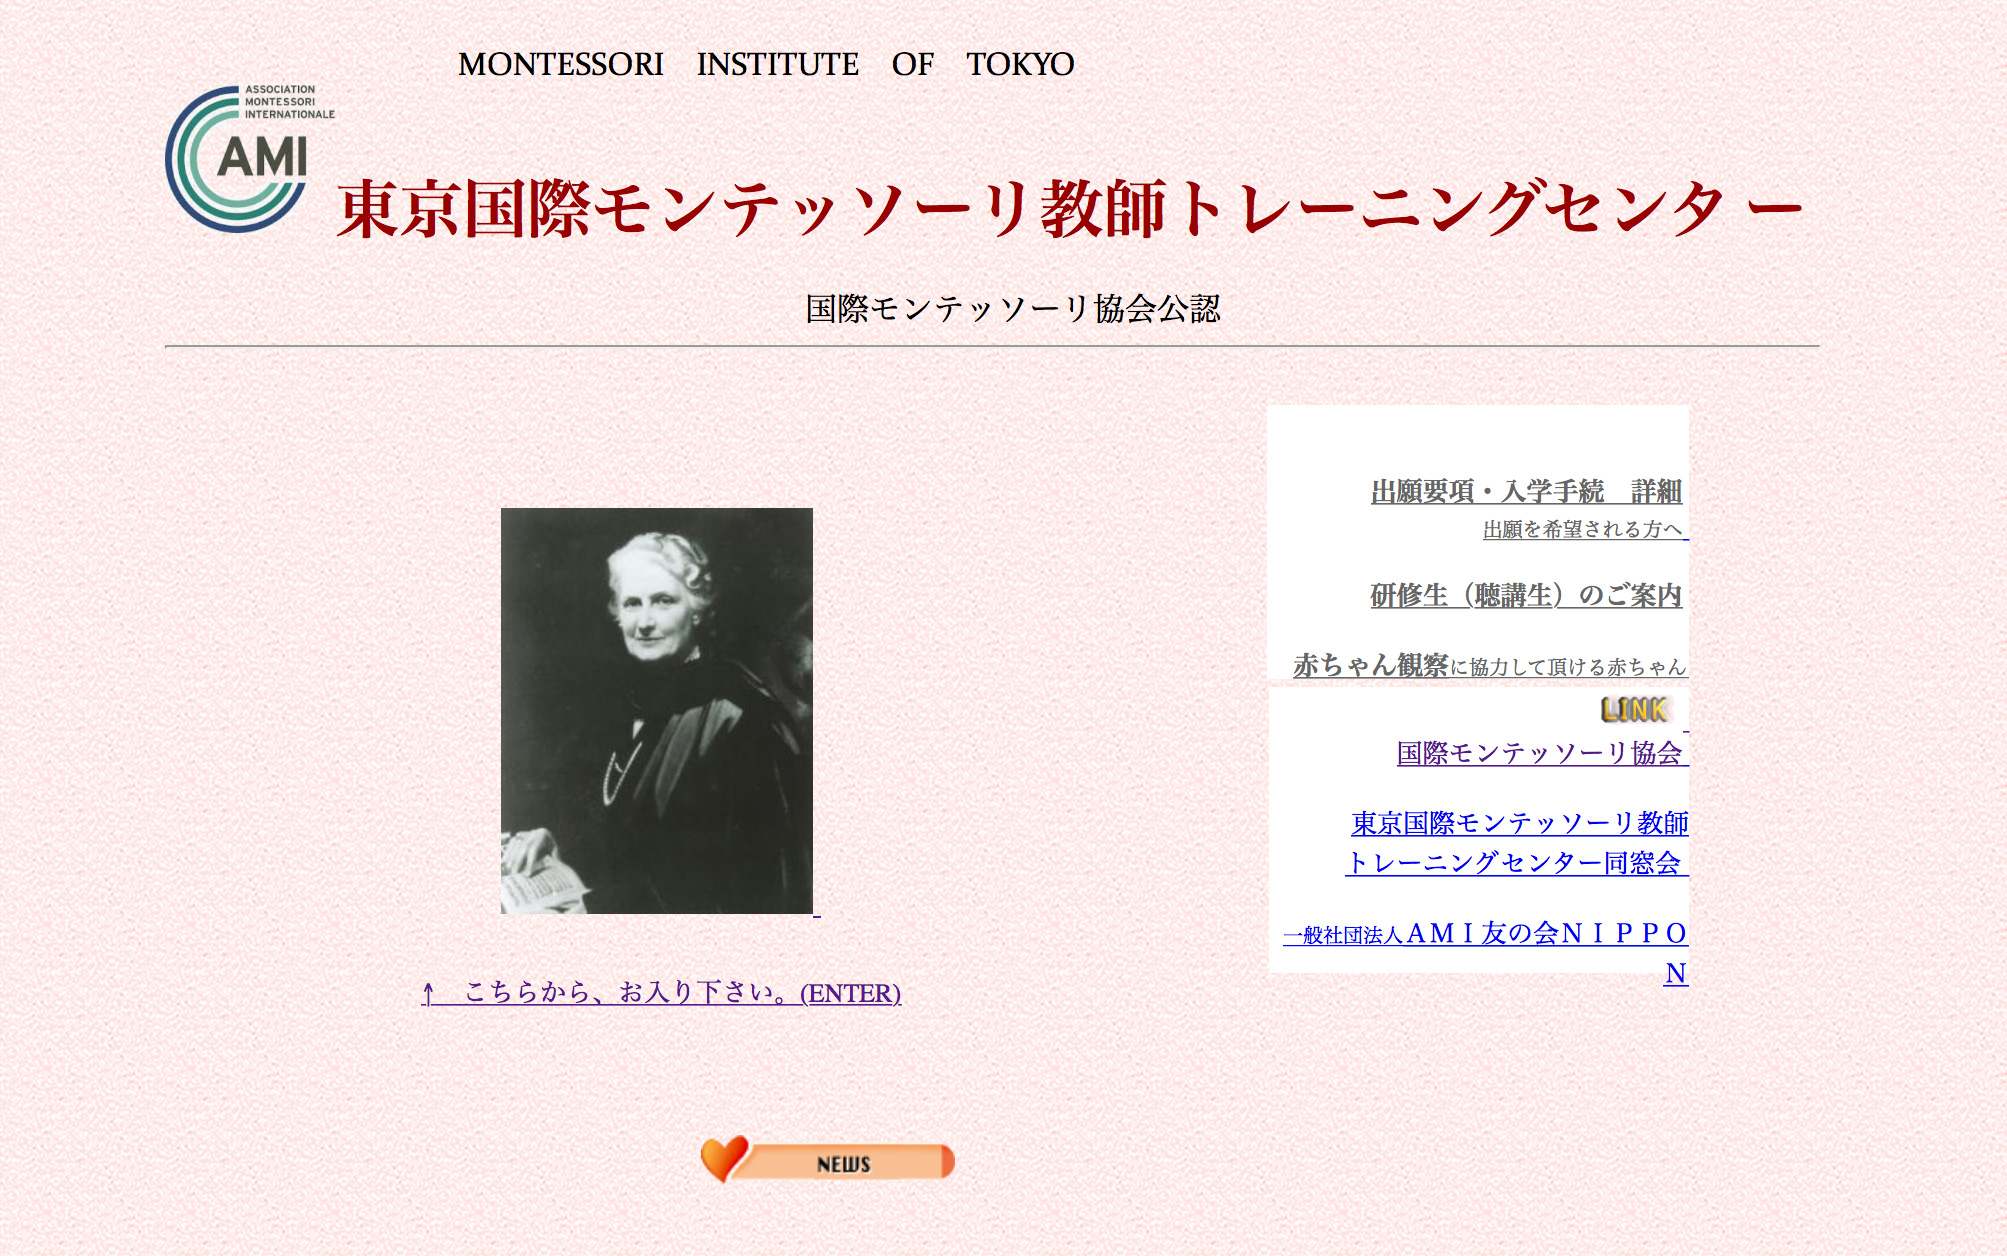 東京国際モンテッソーリ教師トレーニングセンターのホームページ